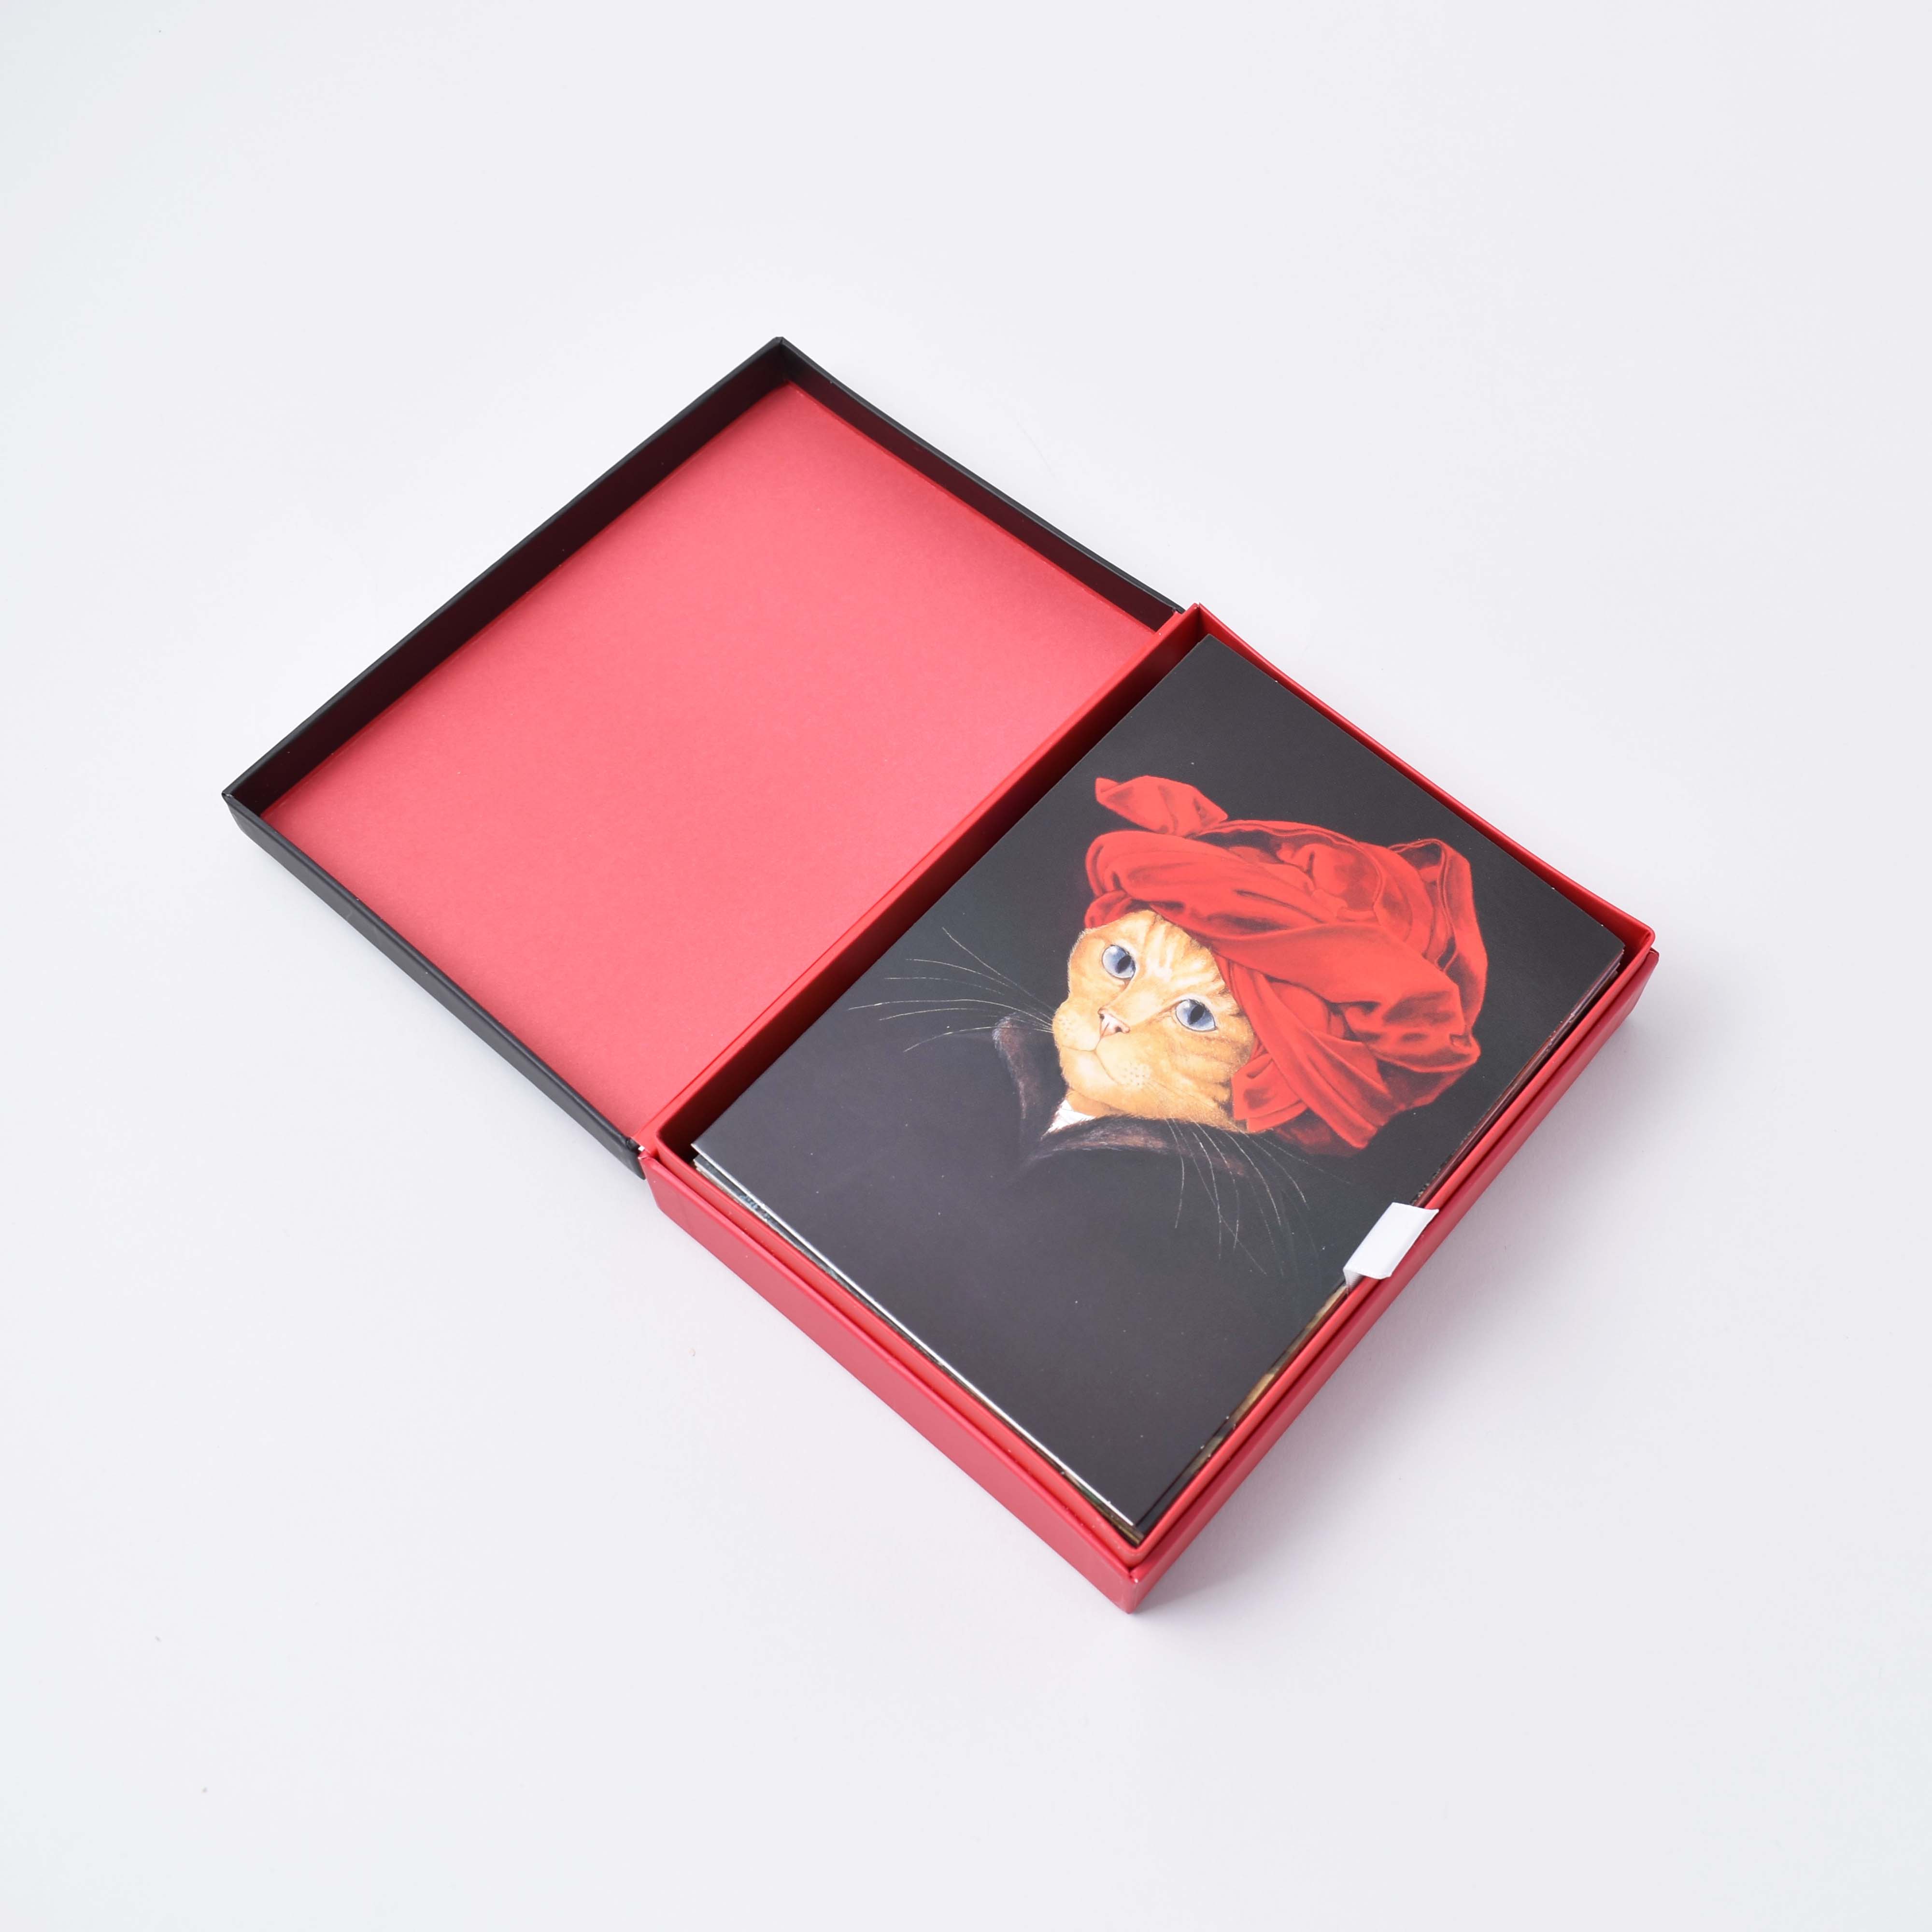 svart och röd ask med vykort och kuvert som föreställer katter i kända konstverk